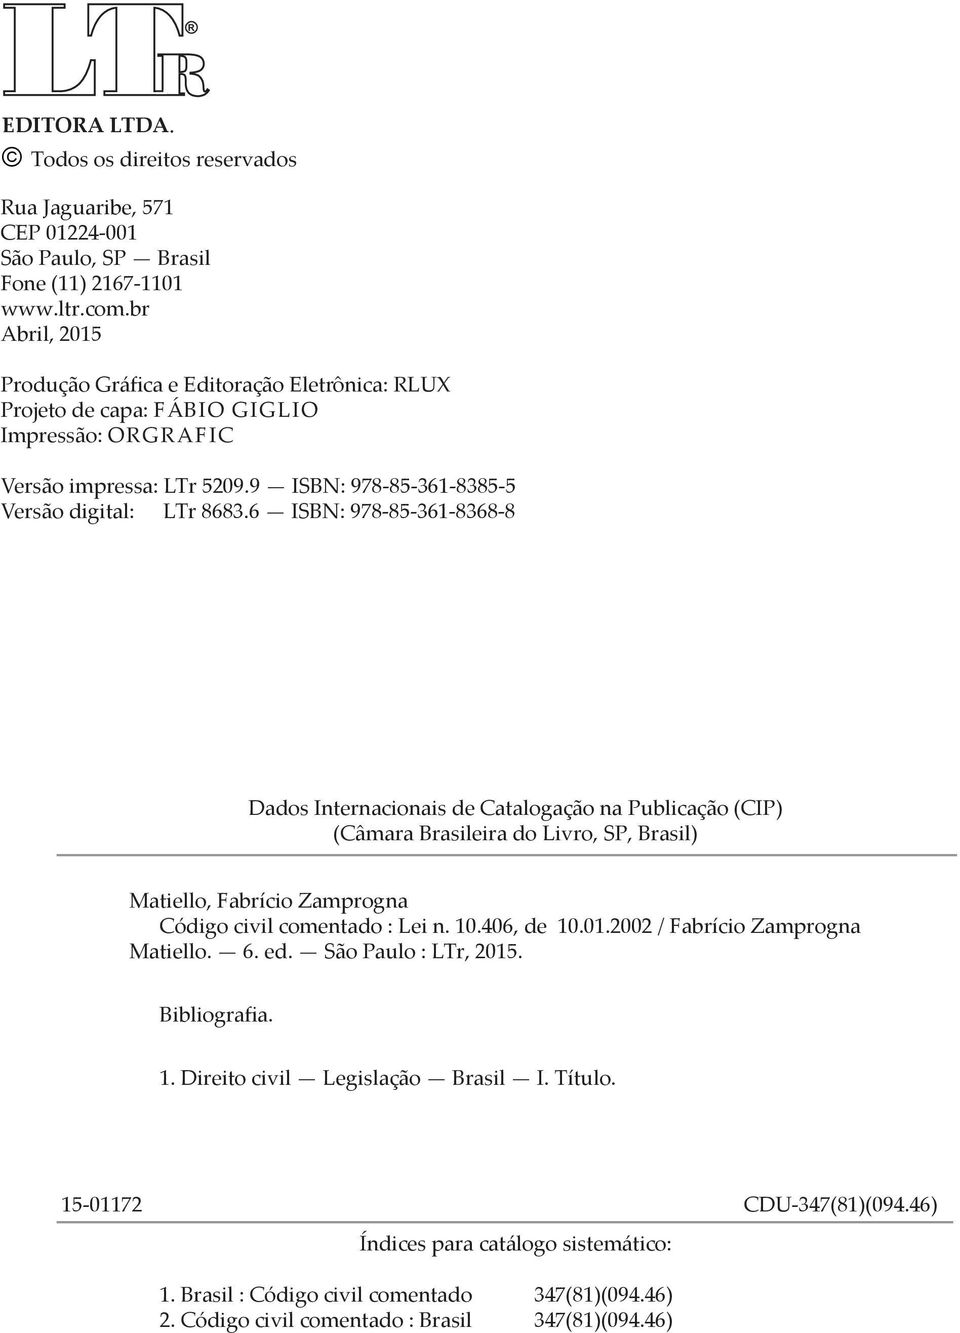 6 ISBN: 978-85-361-8368-8 Dados Internacionais de Catalogação na Publicação (CIP) (Câmara Brasileira do Livro, SP, Brasil) Matiello, Fabrício Zamprogna Código civil comentado : Lei n. 10.406, de 10.